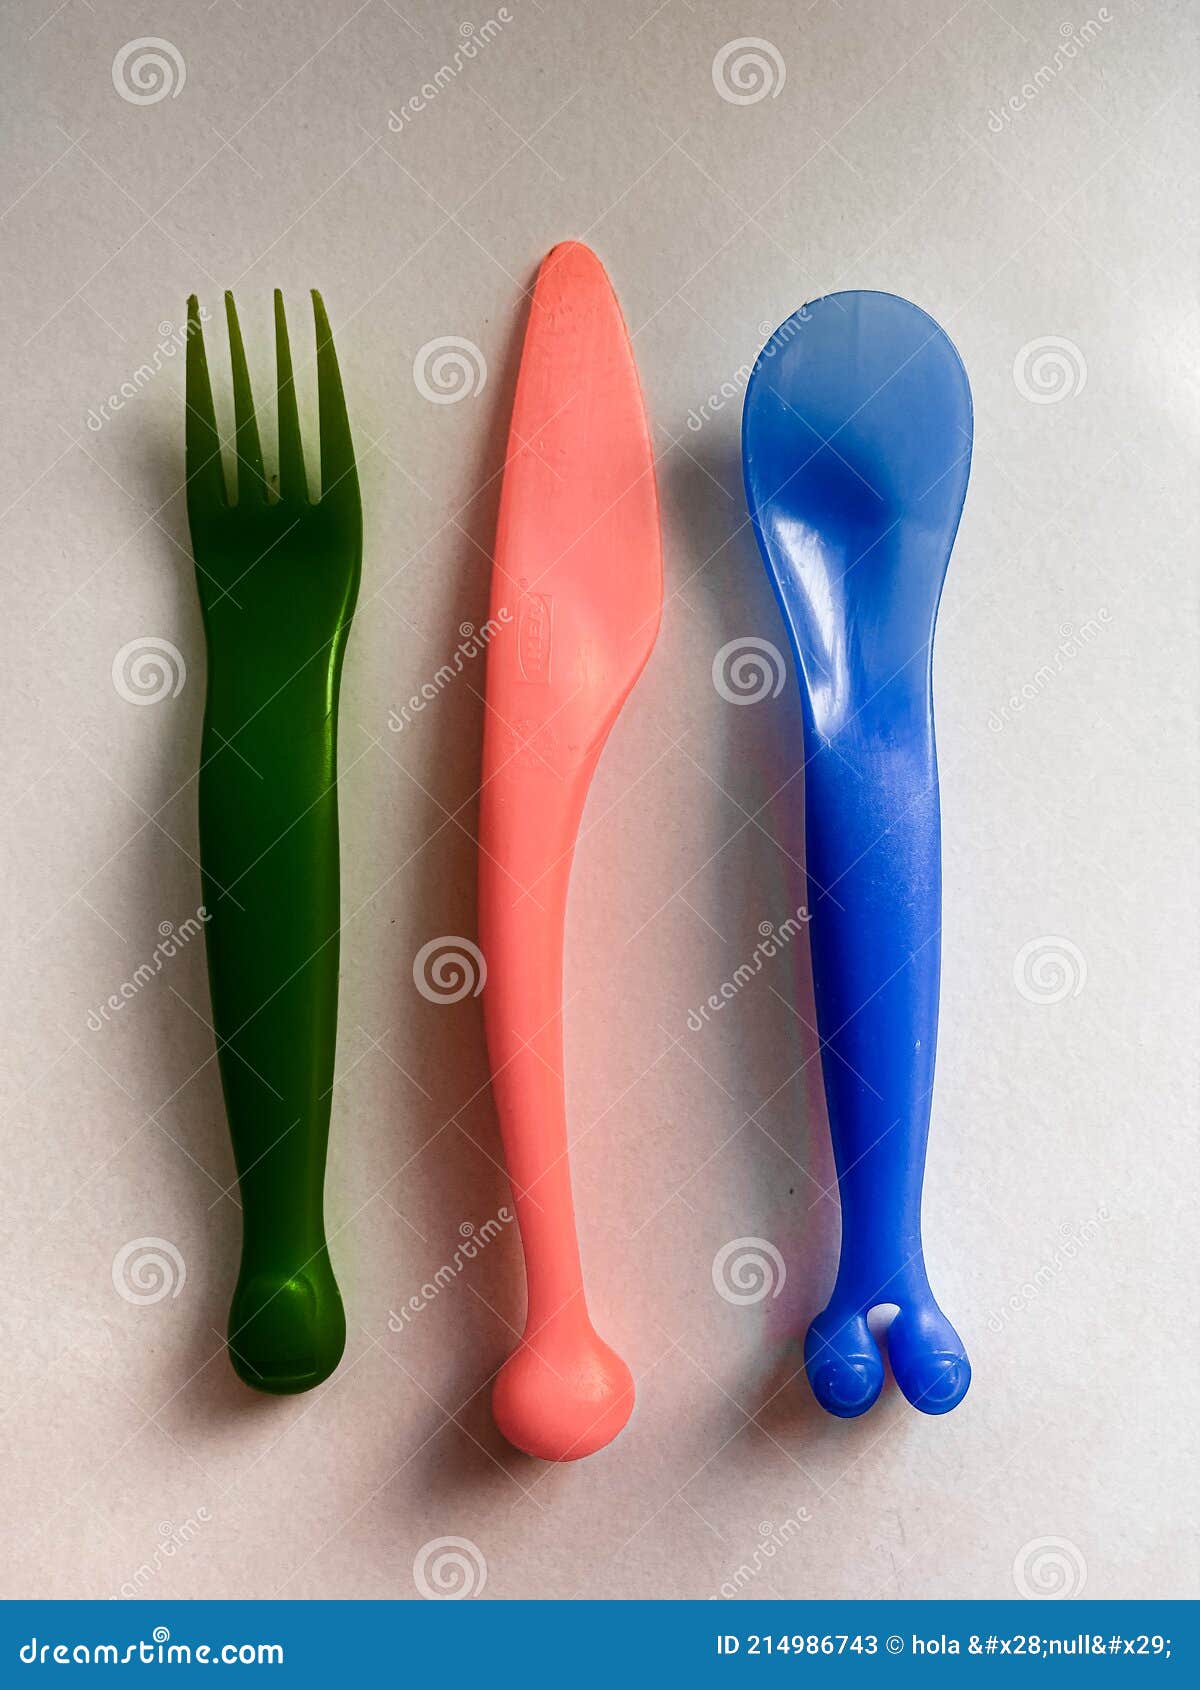 kids plastic cutlery spoon  knife cubiertos de plÃÂ¡stico para niÃÂ±os tenedor cuchillo